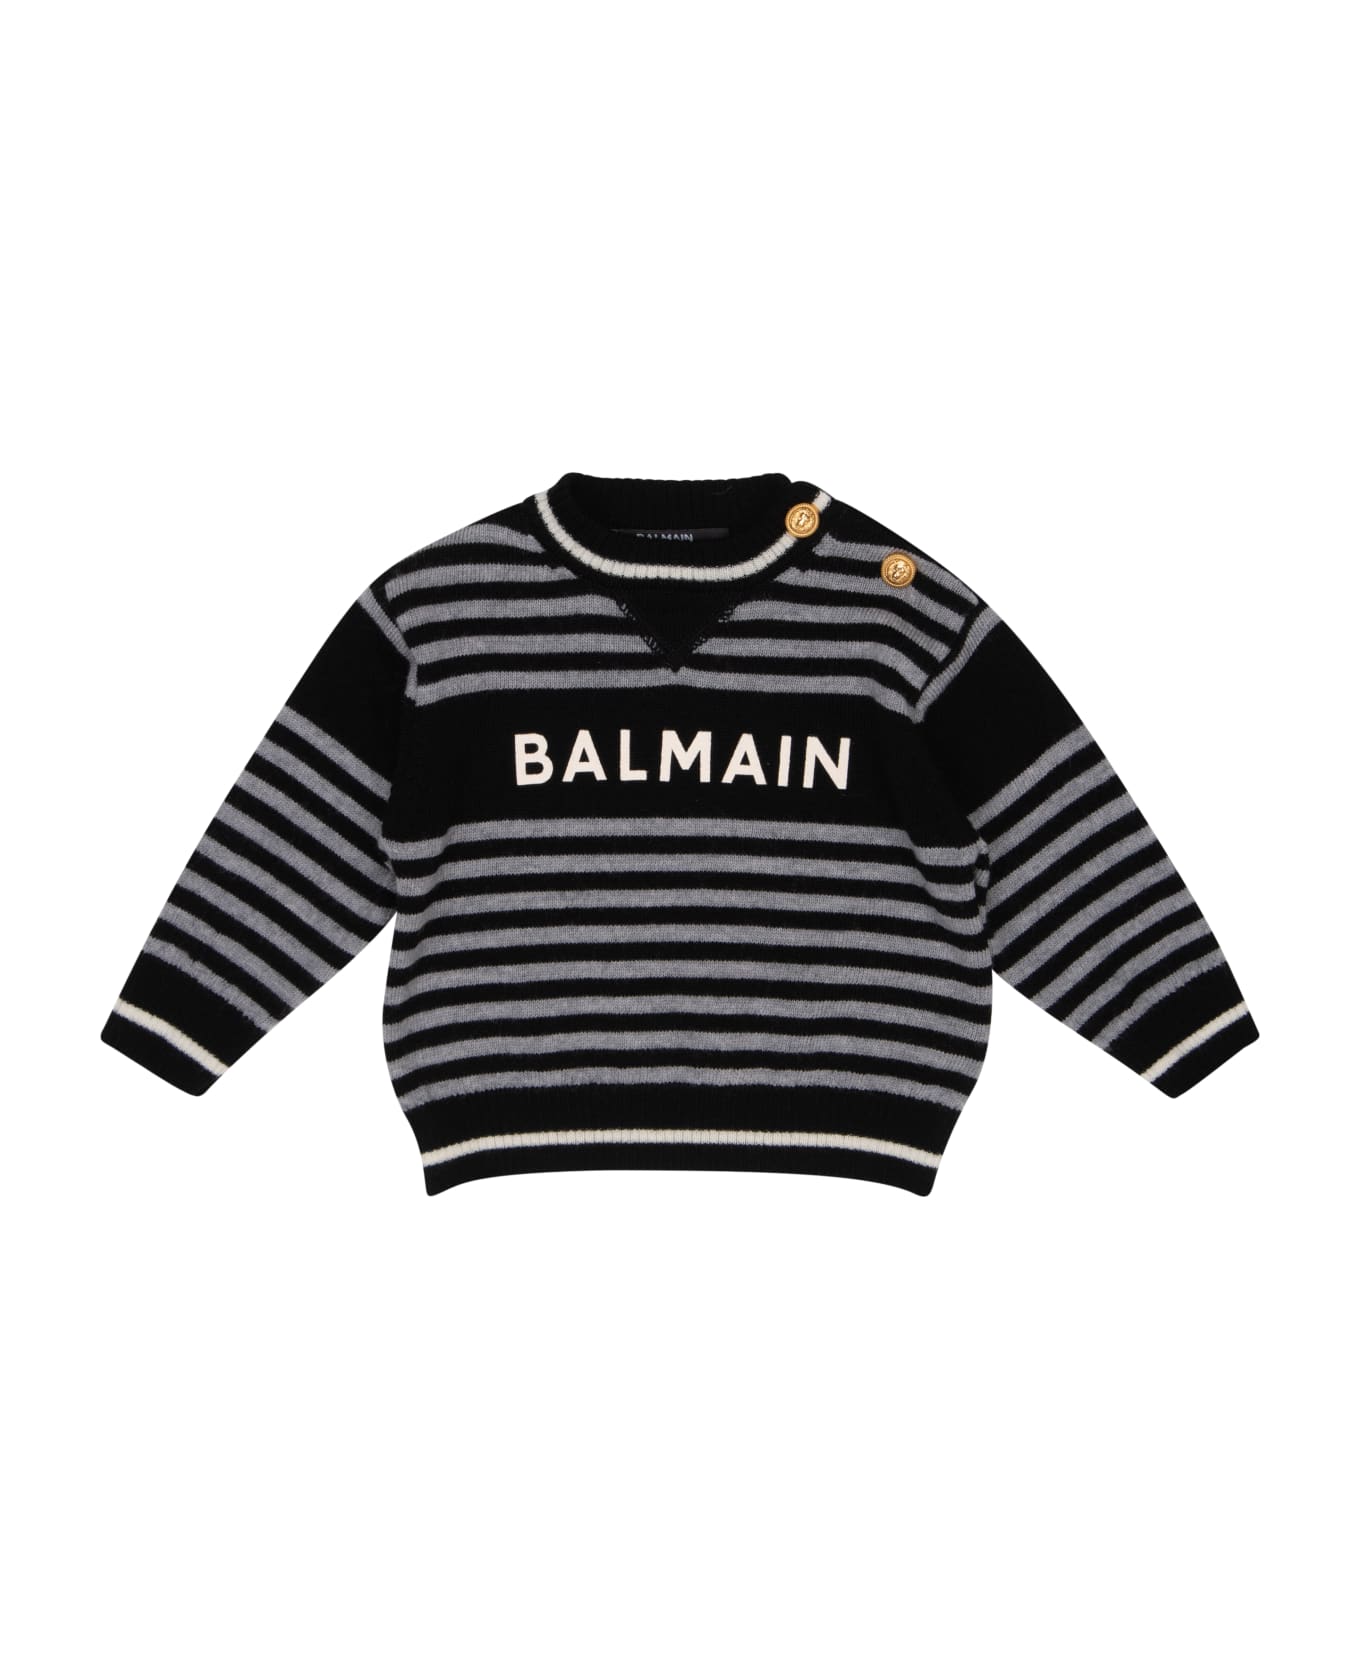 Balmain Printed Sweater - Black